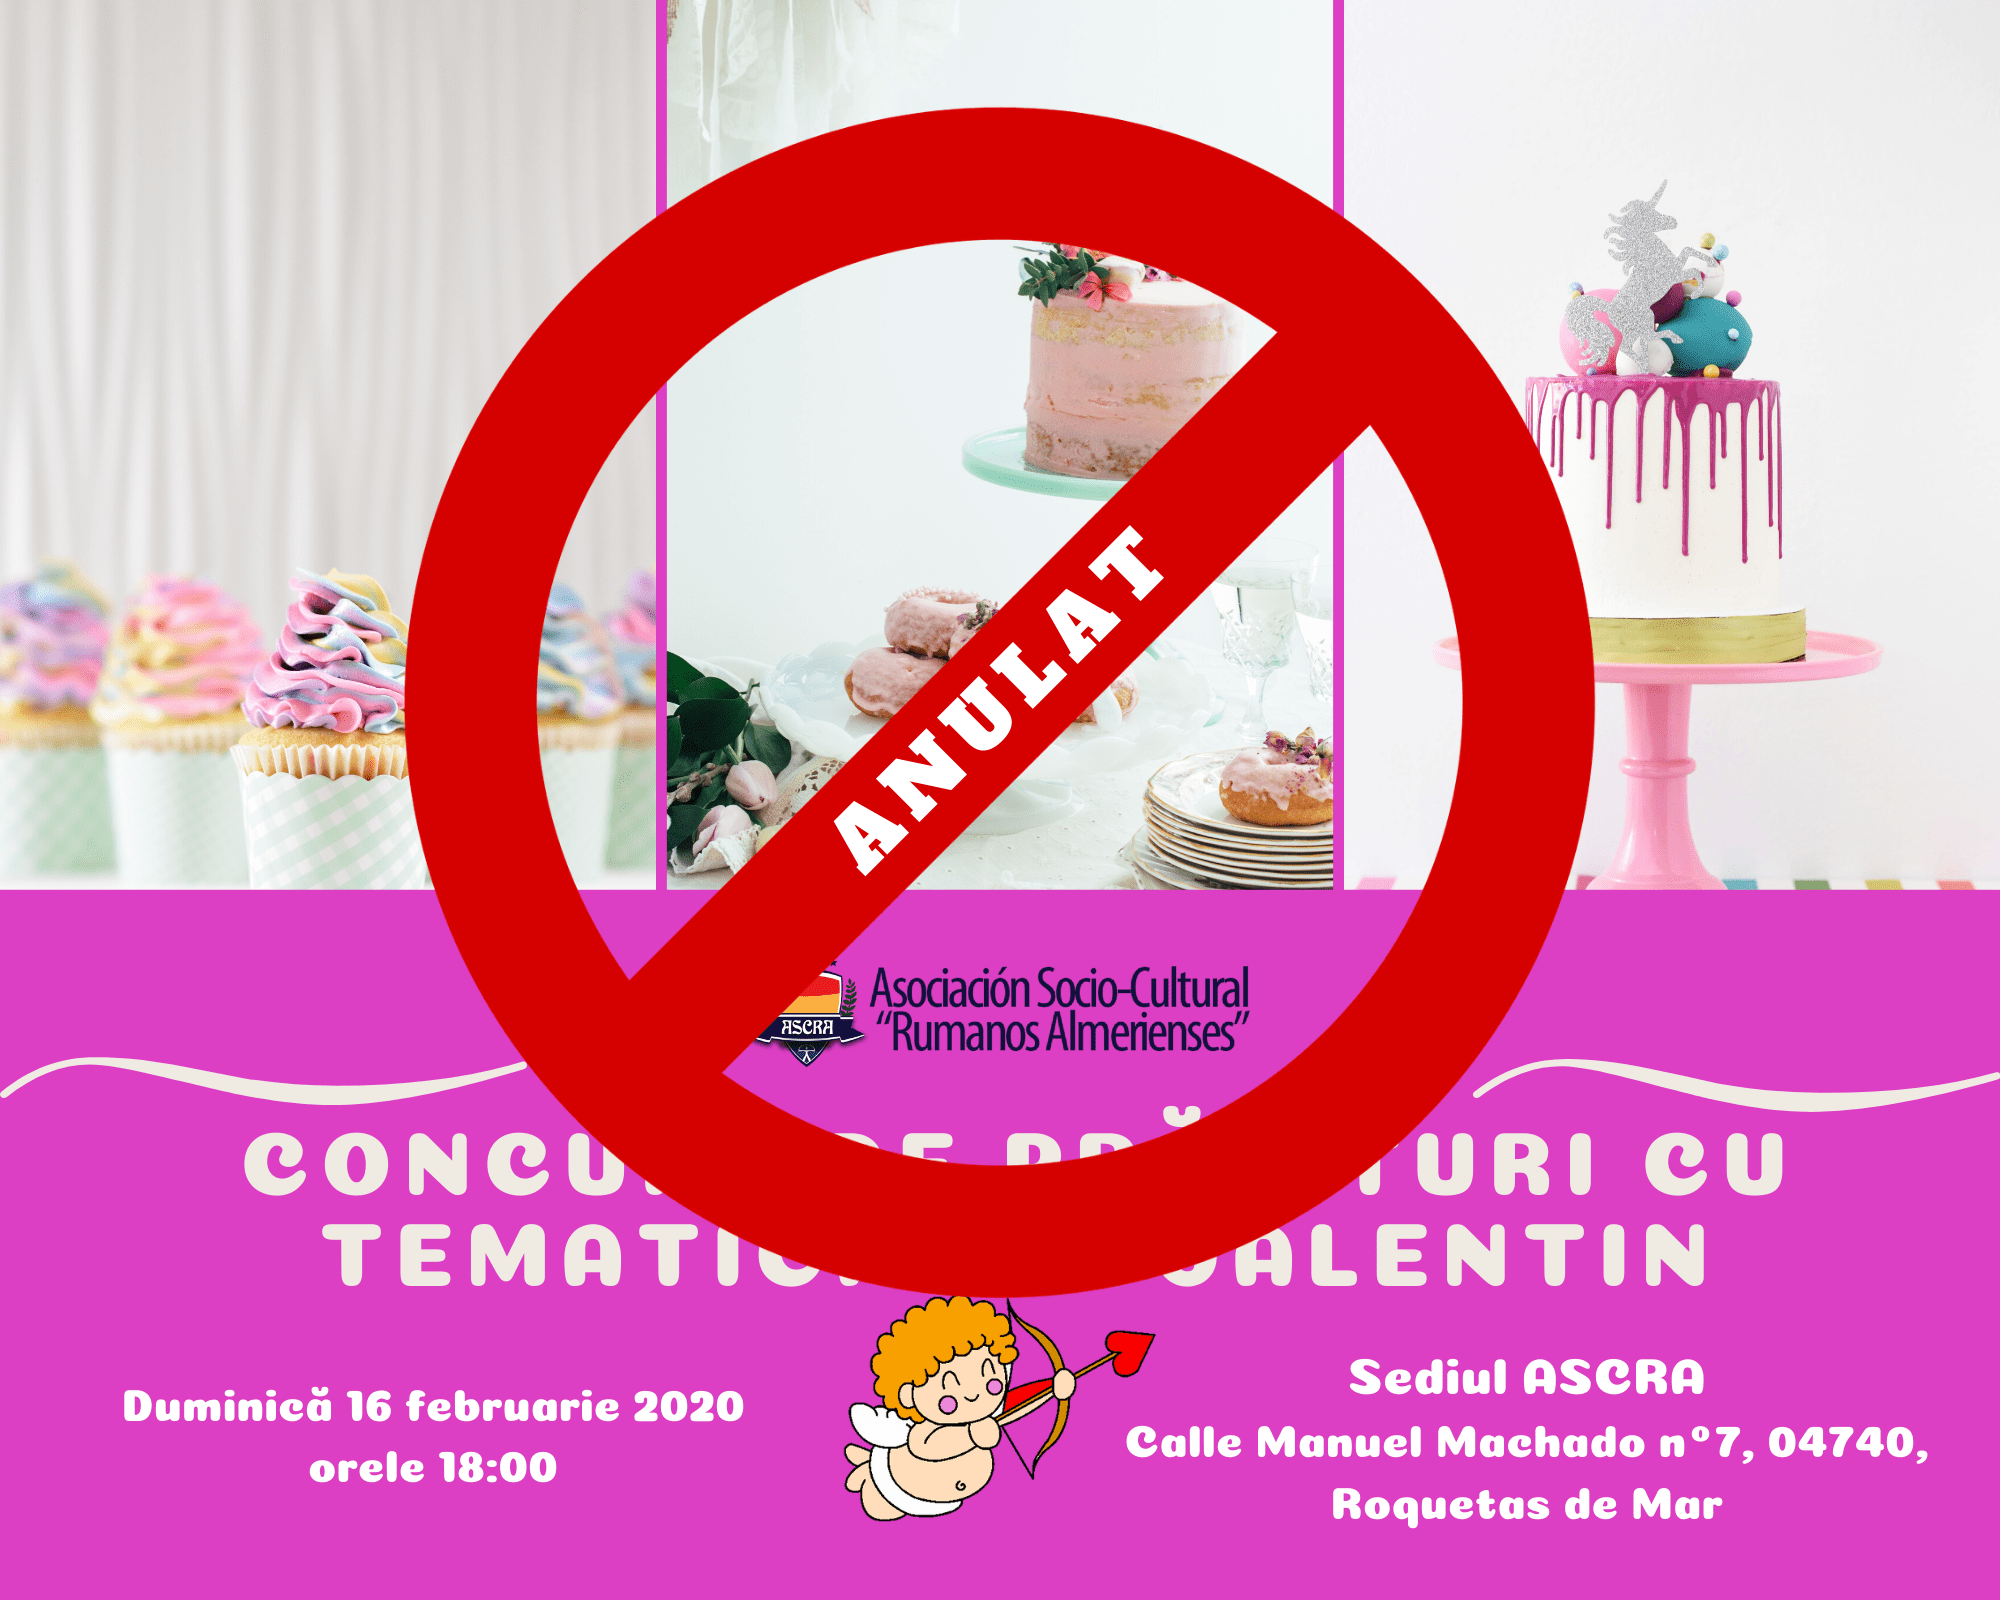 You are currently viewing Concursul de prăjituri cu tematică Sf. Valentin anulat